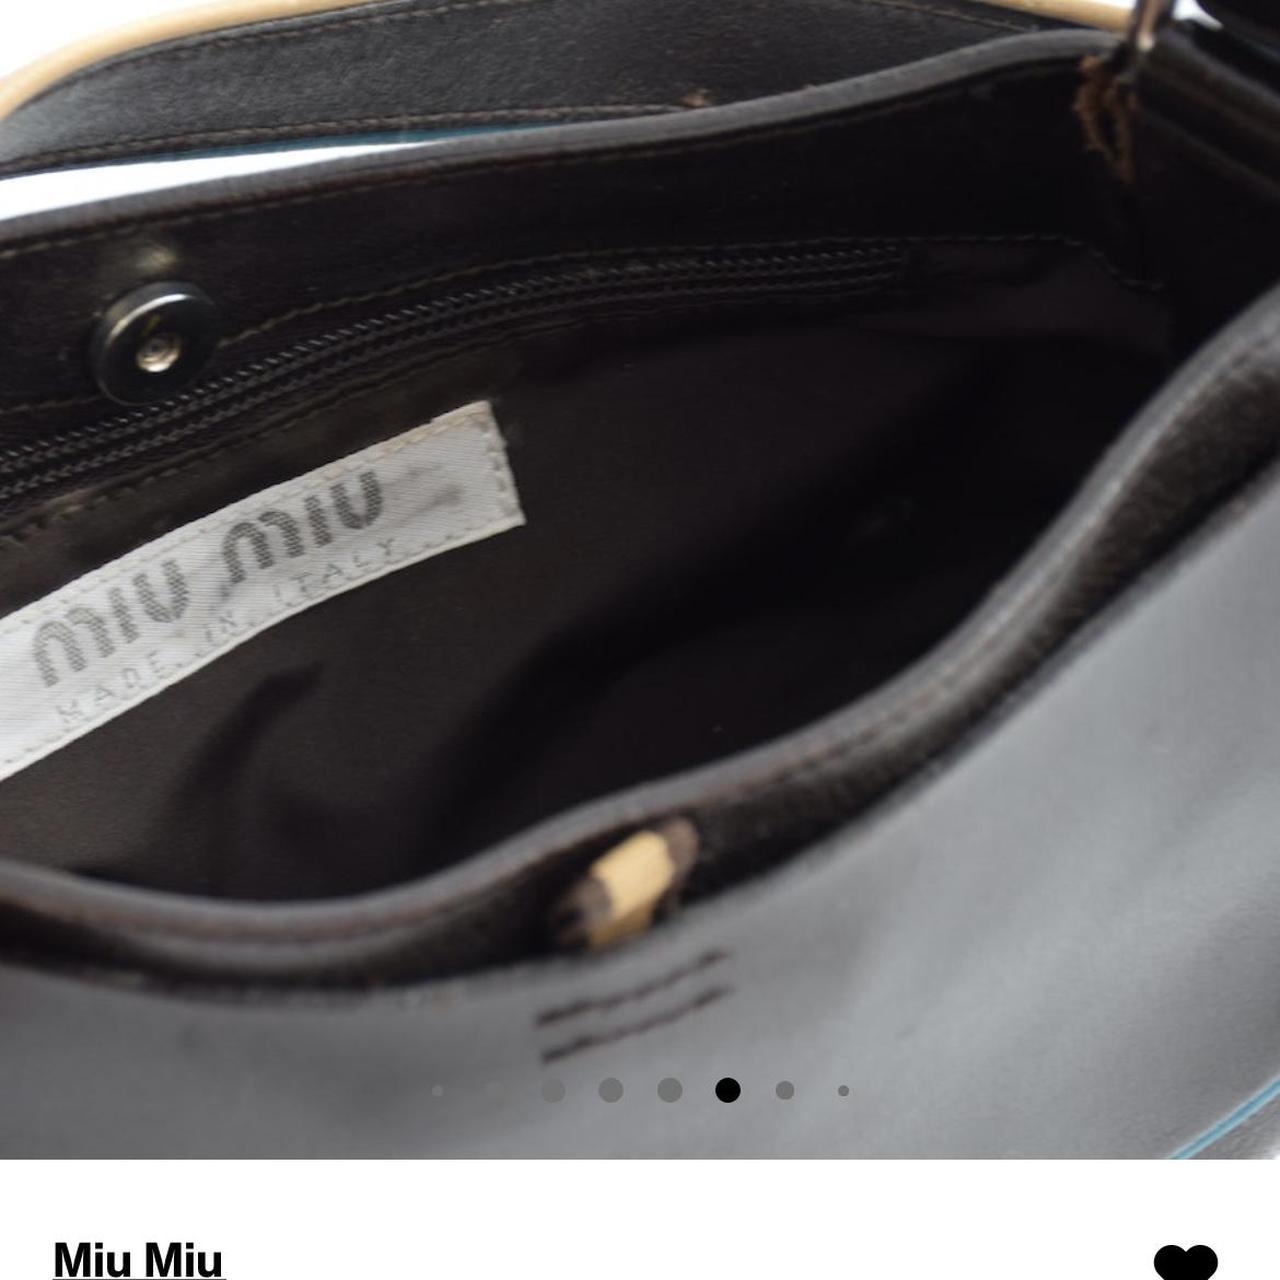 Miu Miu AW 1999 Bag - Depop